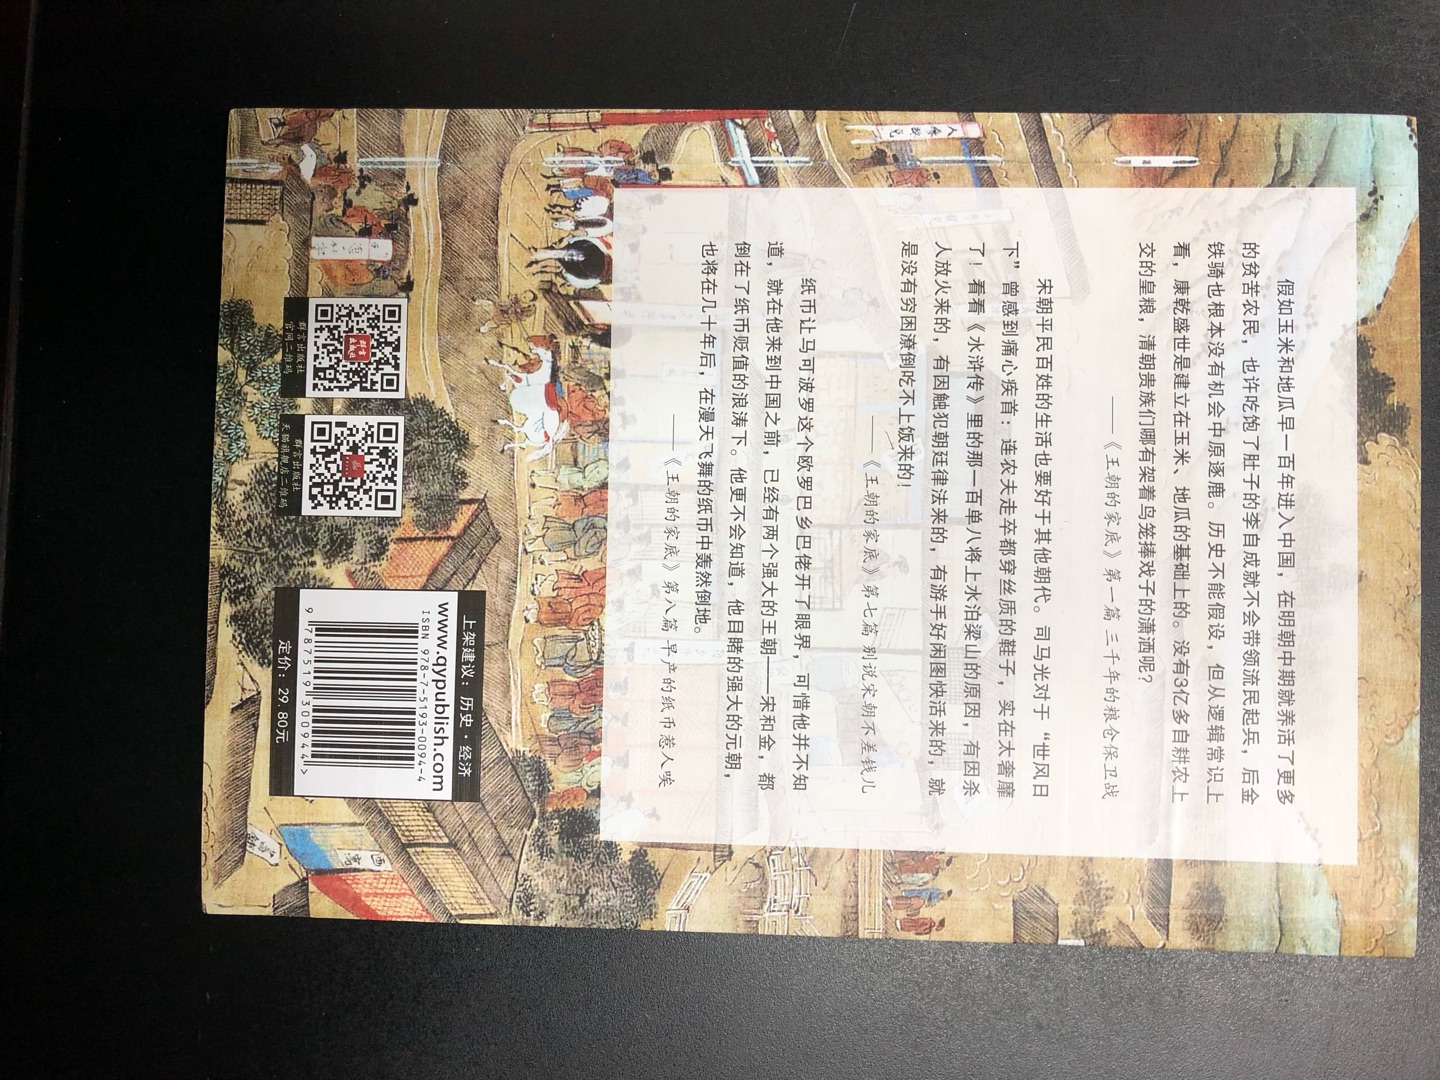 最近对经济史或财政史比较感兴趣，所以买了这本书，从经济角度解读中国历史，本书语言比较通俗，内容趣味性不错，买来看看还是值得的，正值双十一活动，书的价格很优惠